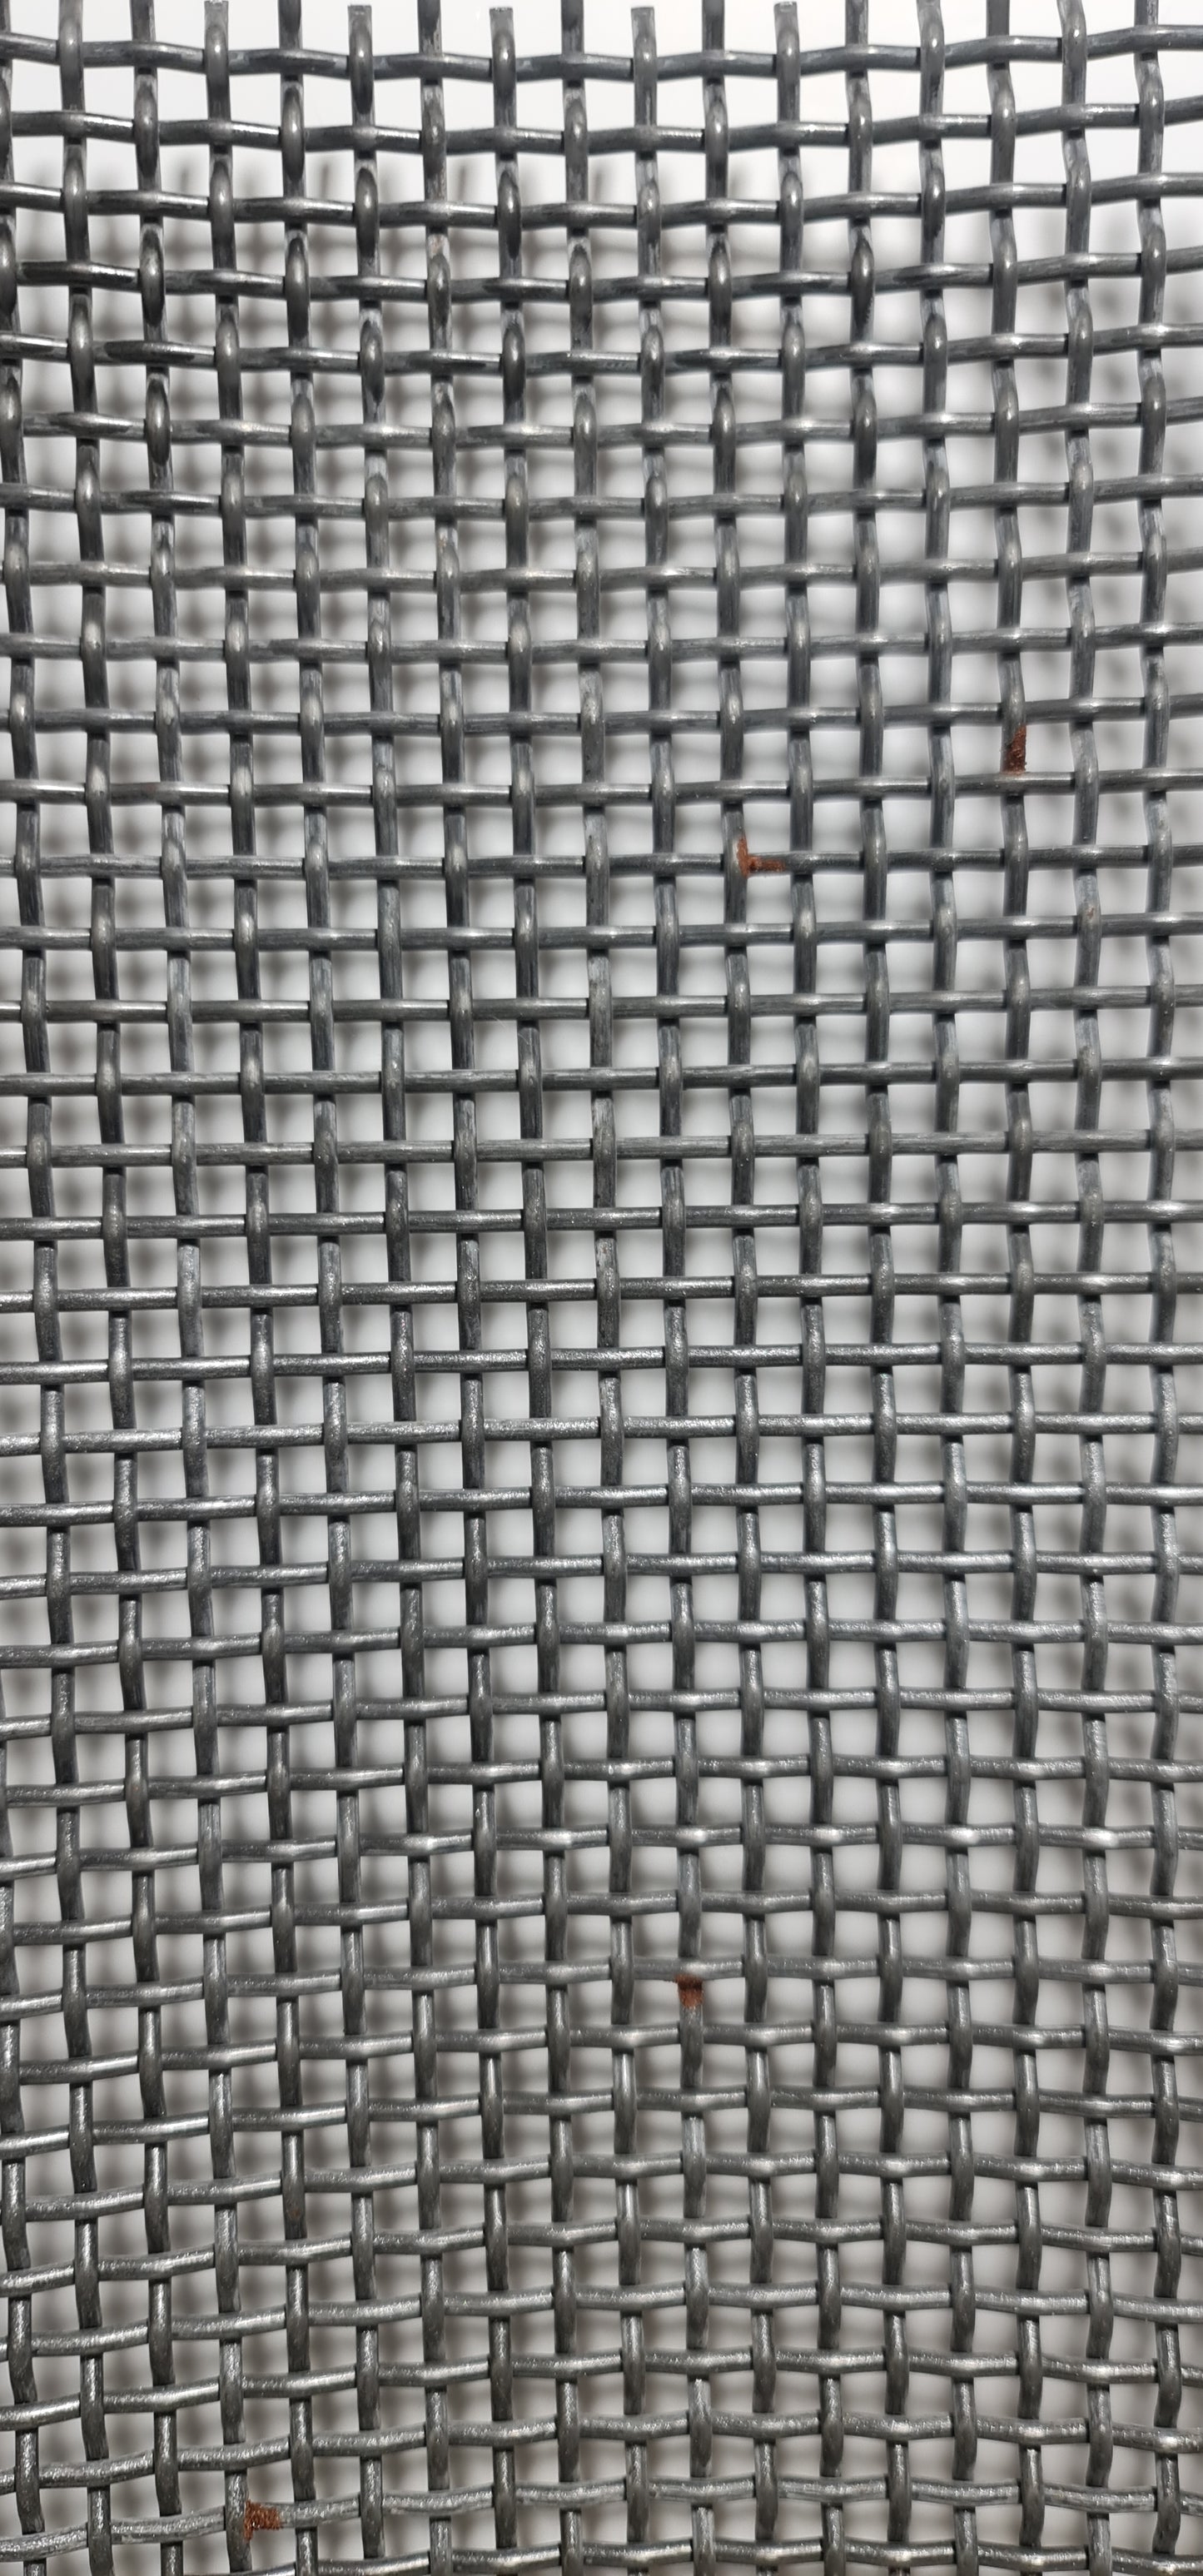 Fabric sieve 1000x660x2.5 MW 3.0 mm